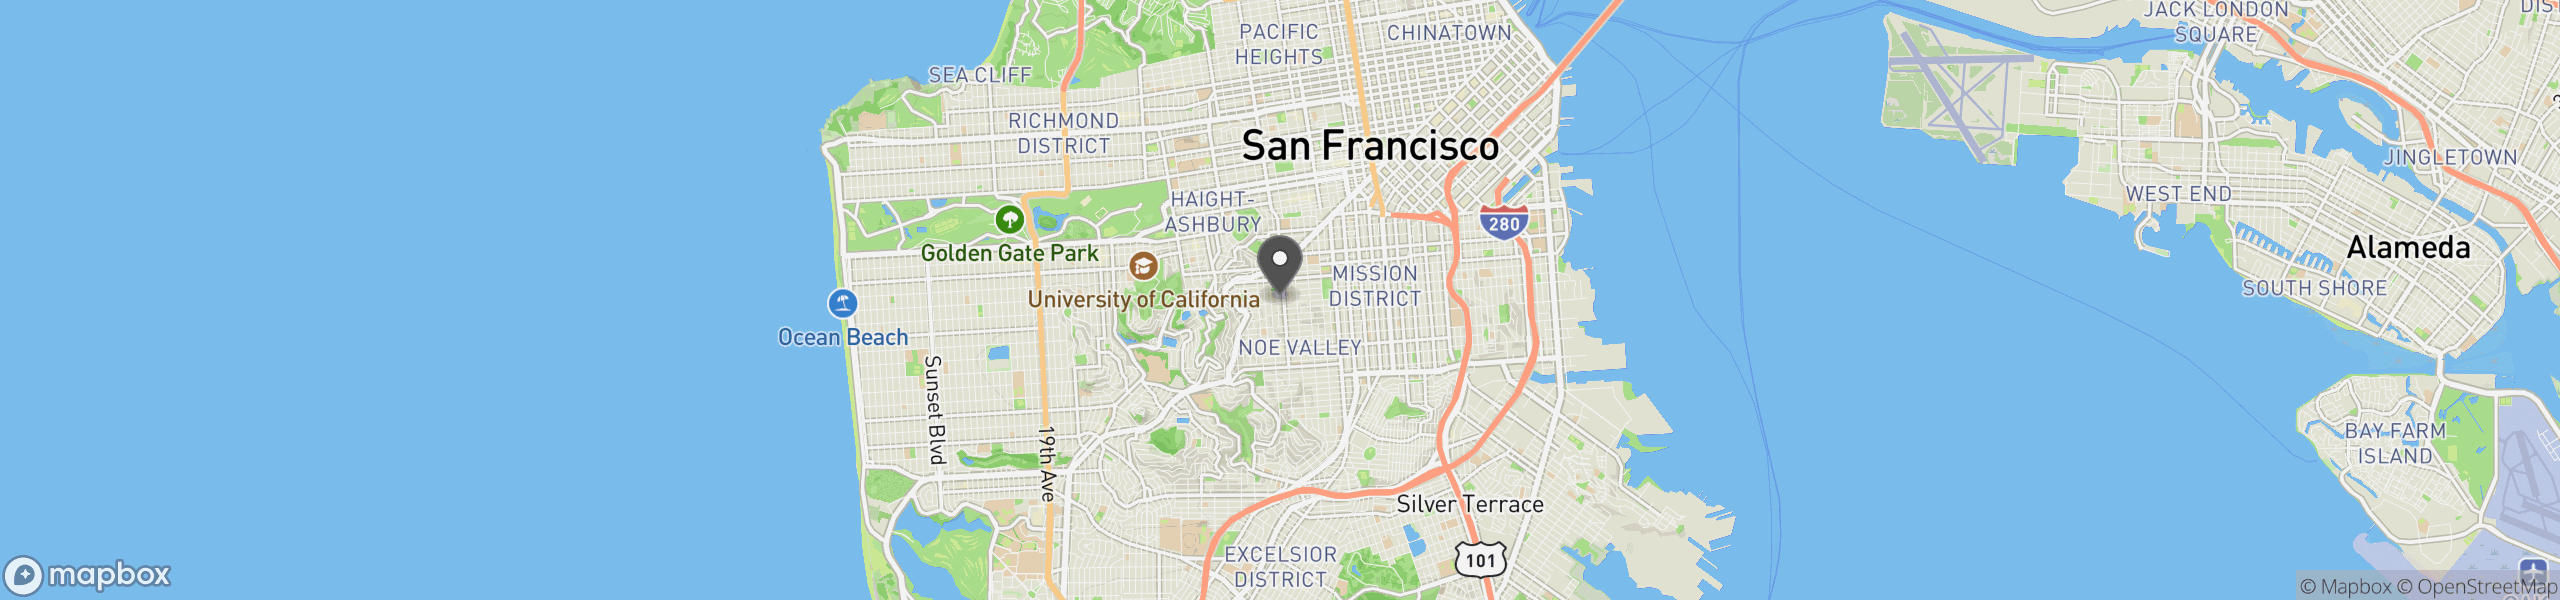 San Francisco, CA 94114